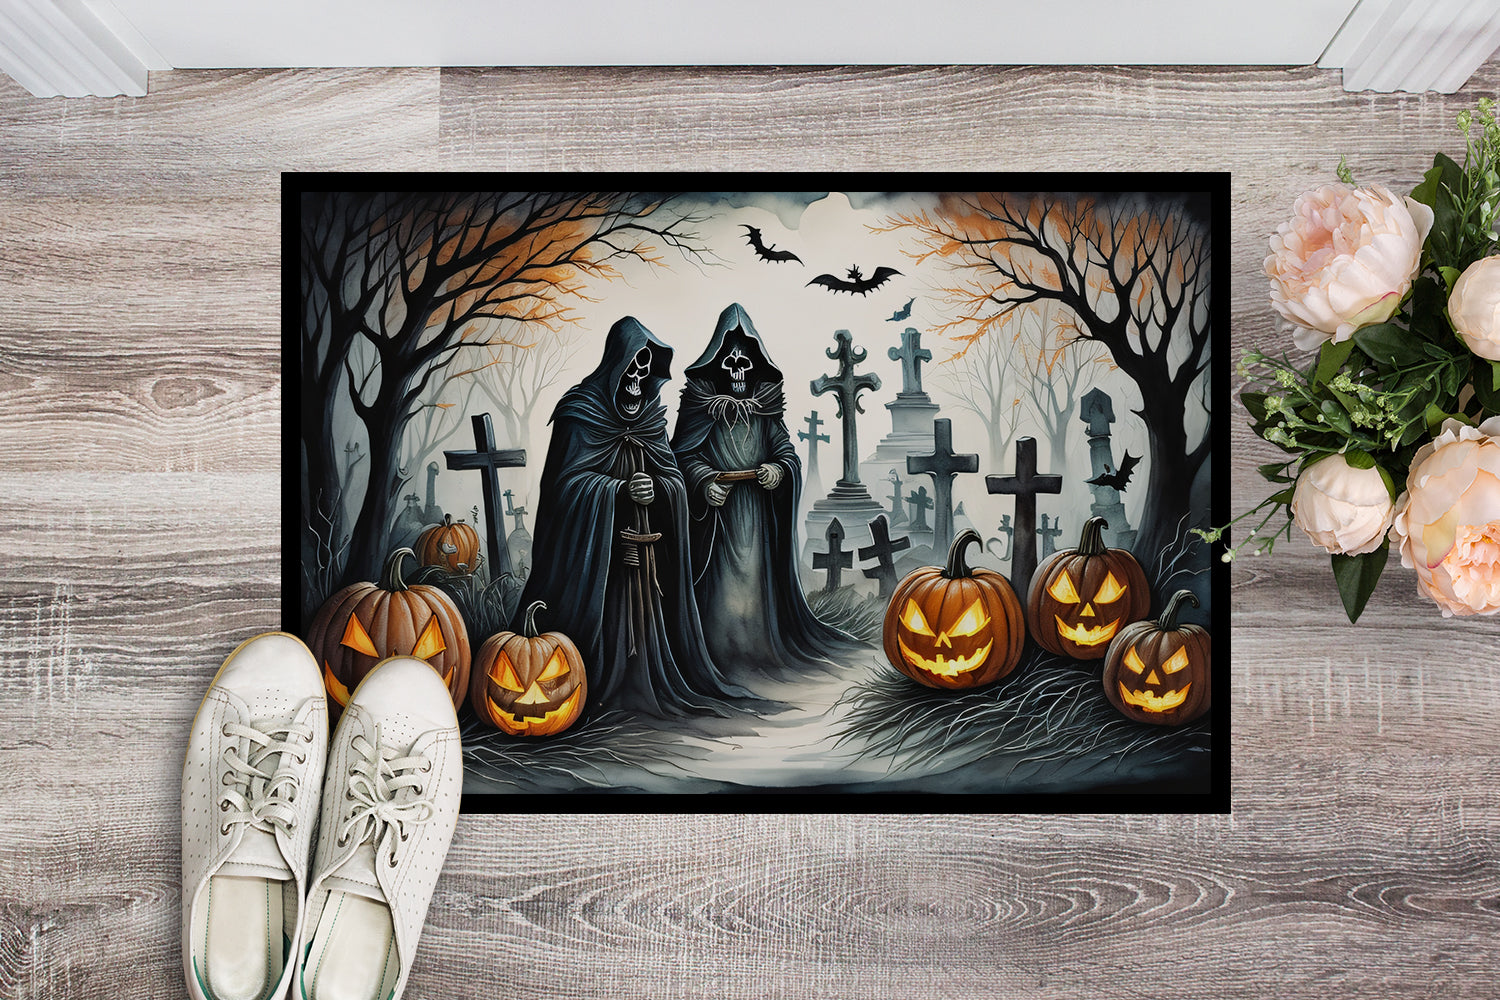 The Grim Reaper Spooky Halloween Doormat 18x27  the-store.com.